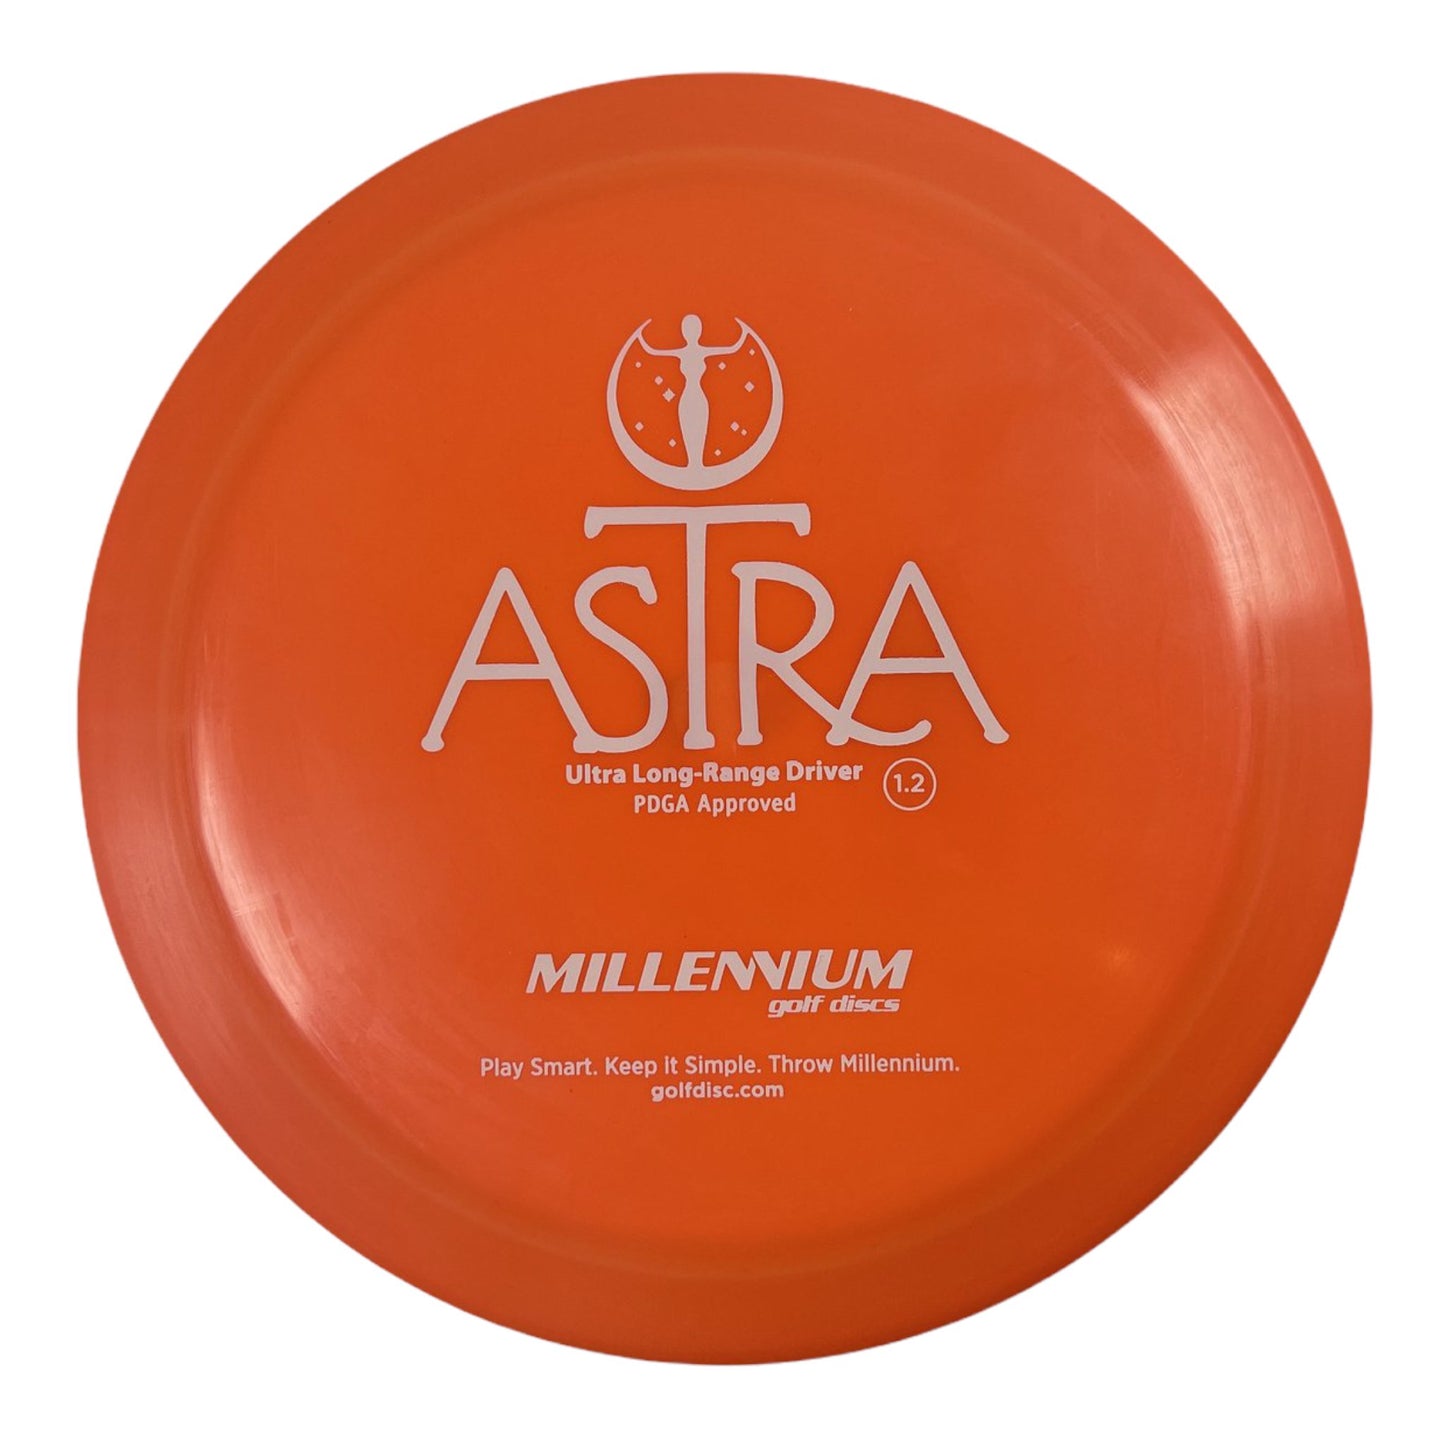 Millennium Golf Discs Astra | Standard | Orange/White 175g Disc Golf